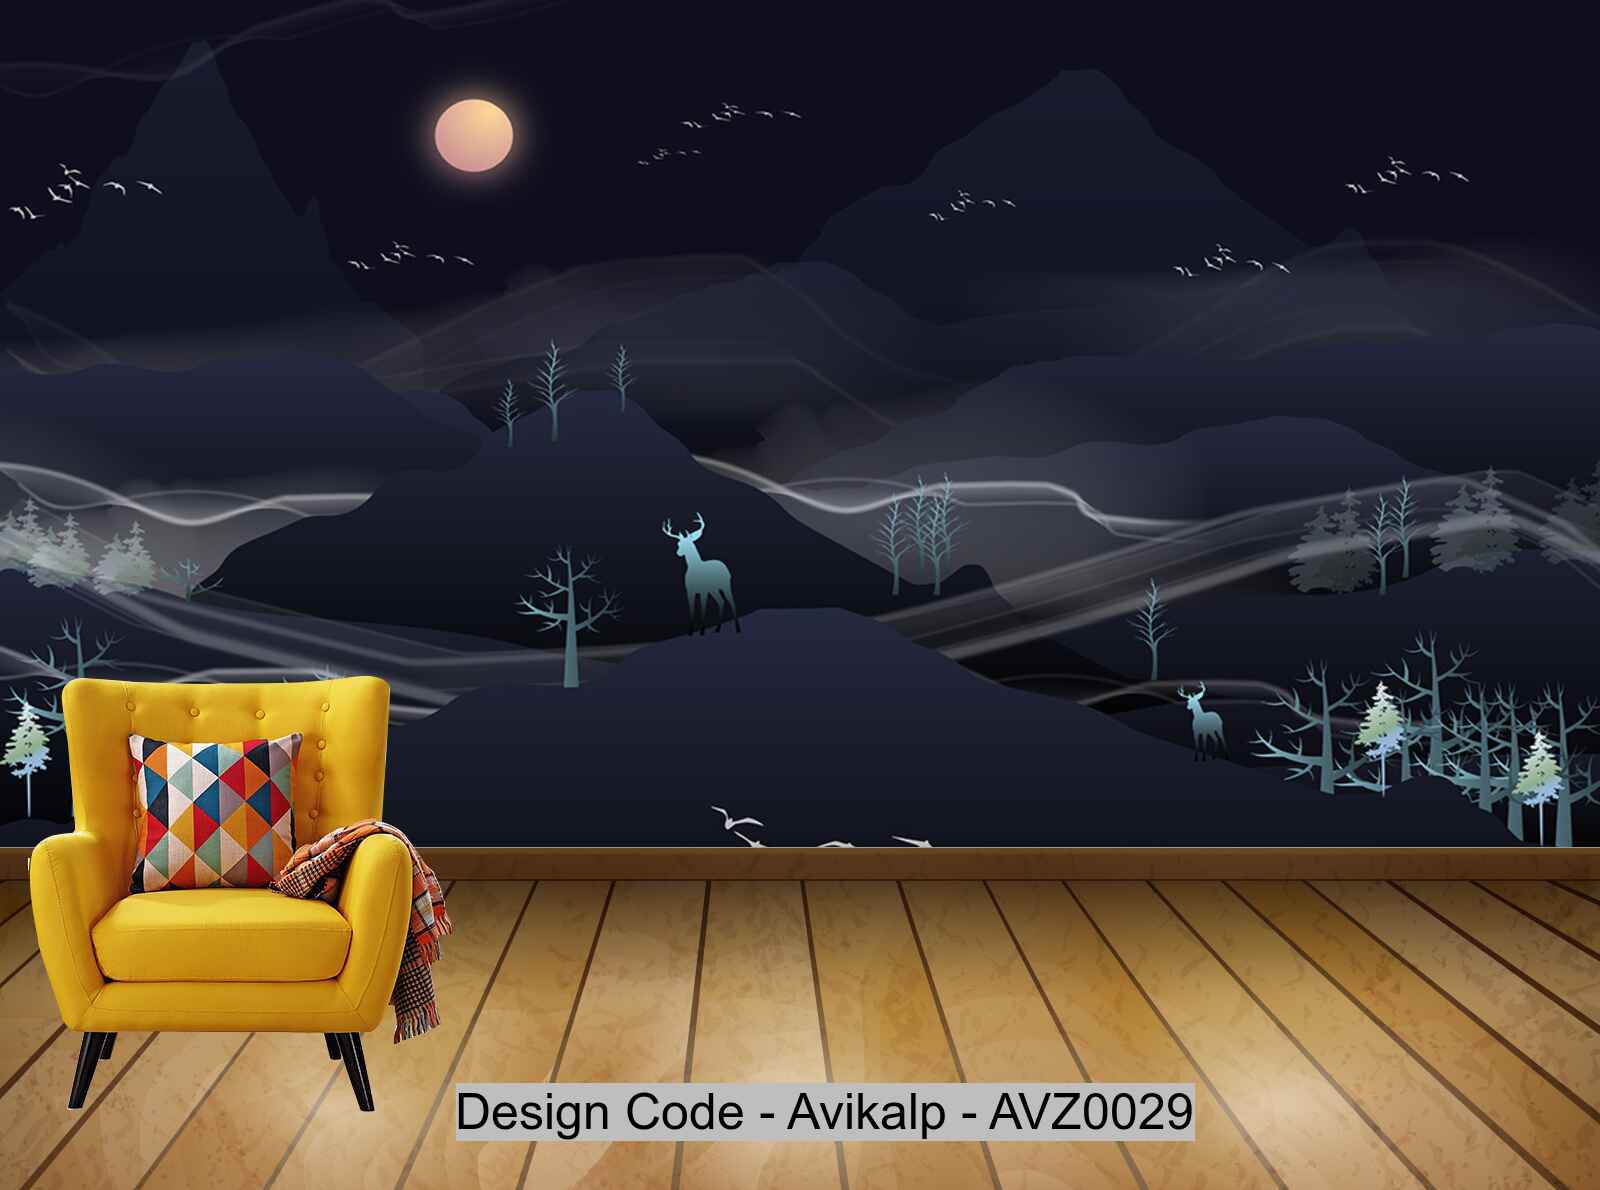 Avikalp Exclusive AVZ0029 Textured Landscape Landscape Tv Background Wall HD 3D Wallpaper